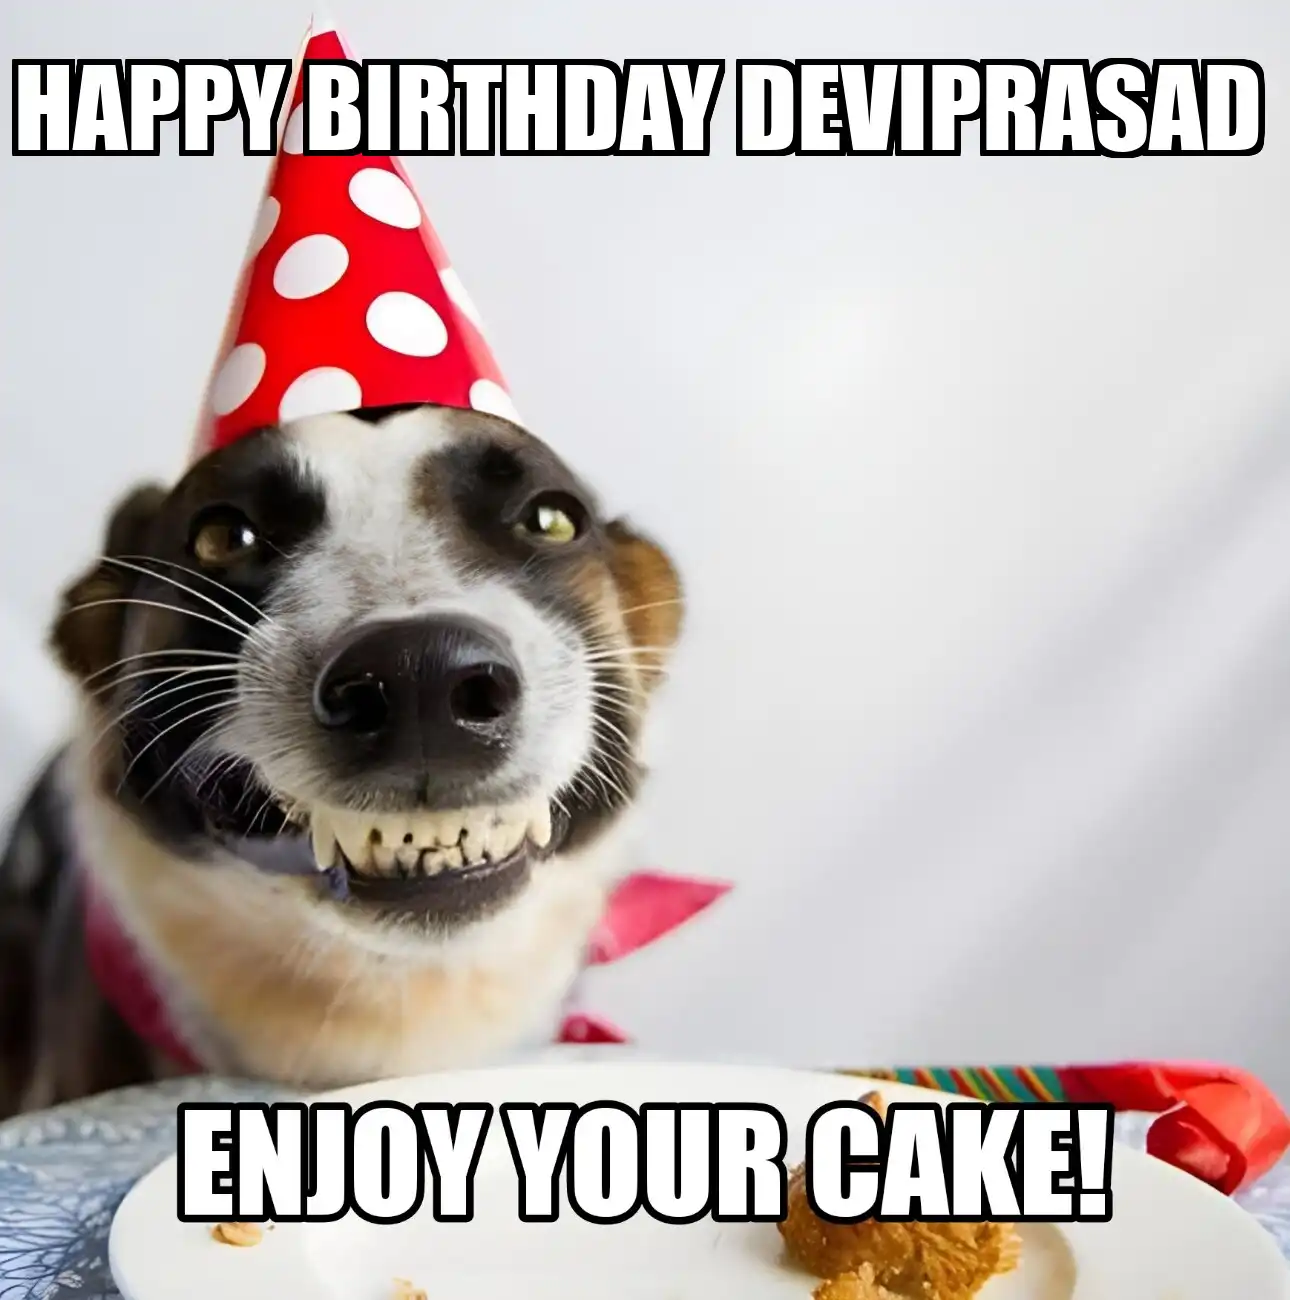 Happy Birthday Deviprasad Enjoy Your Cake Dog Meme